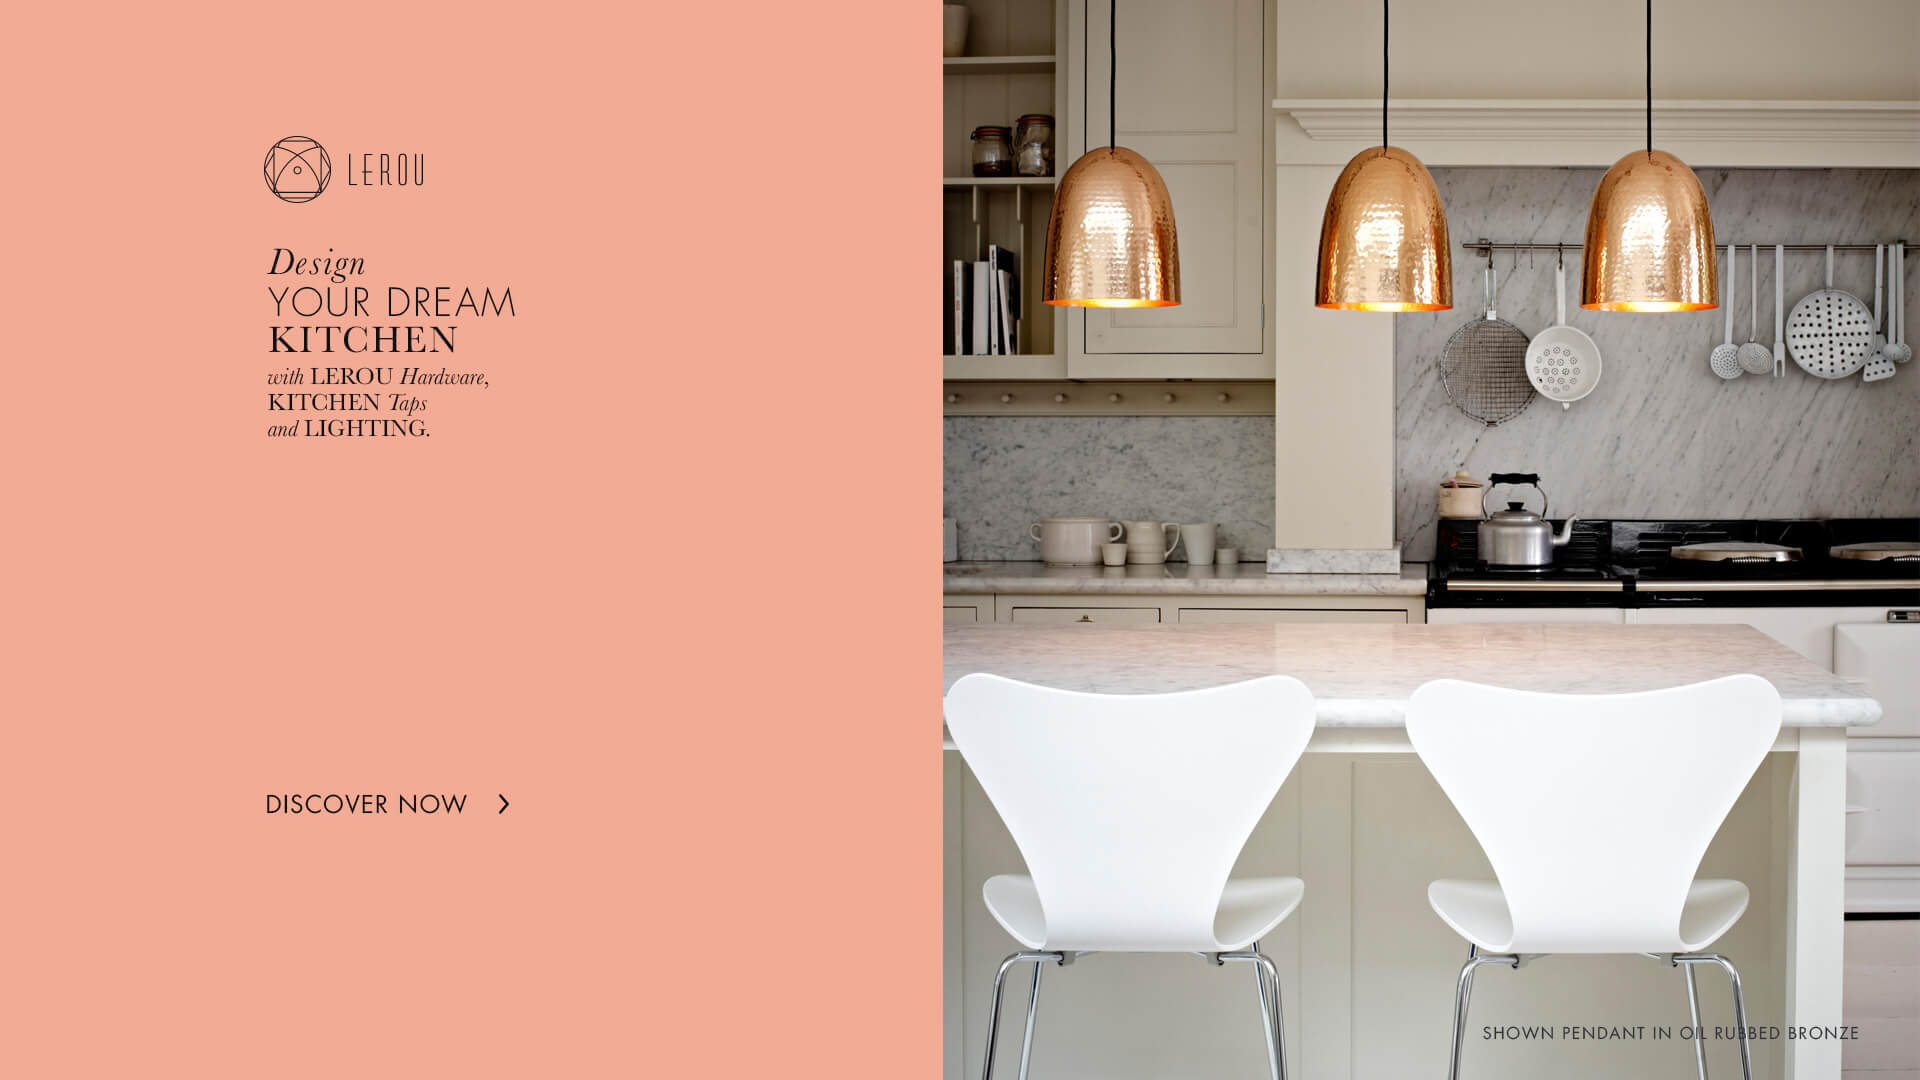 Design Your Dream Kitchen With Lerou Furniture Hardware, Kitchen Taps and Lighting. Ontwerp uw droomkeuken met Lerou Meubelbeslag, Kraanwerk en Verlichting.